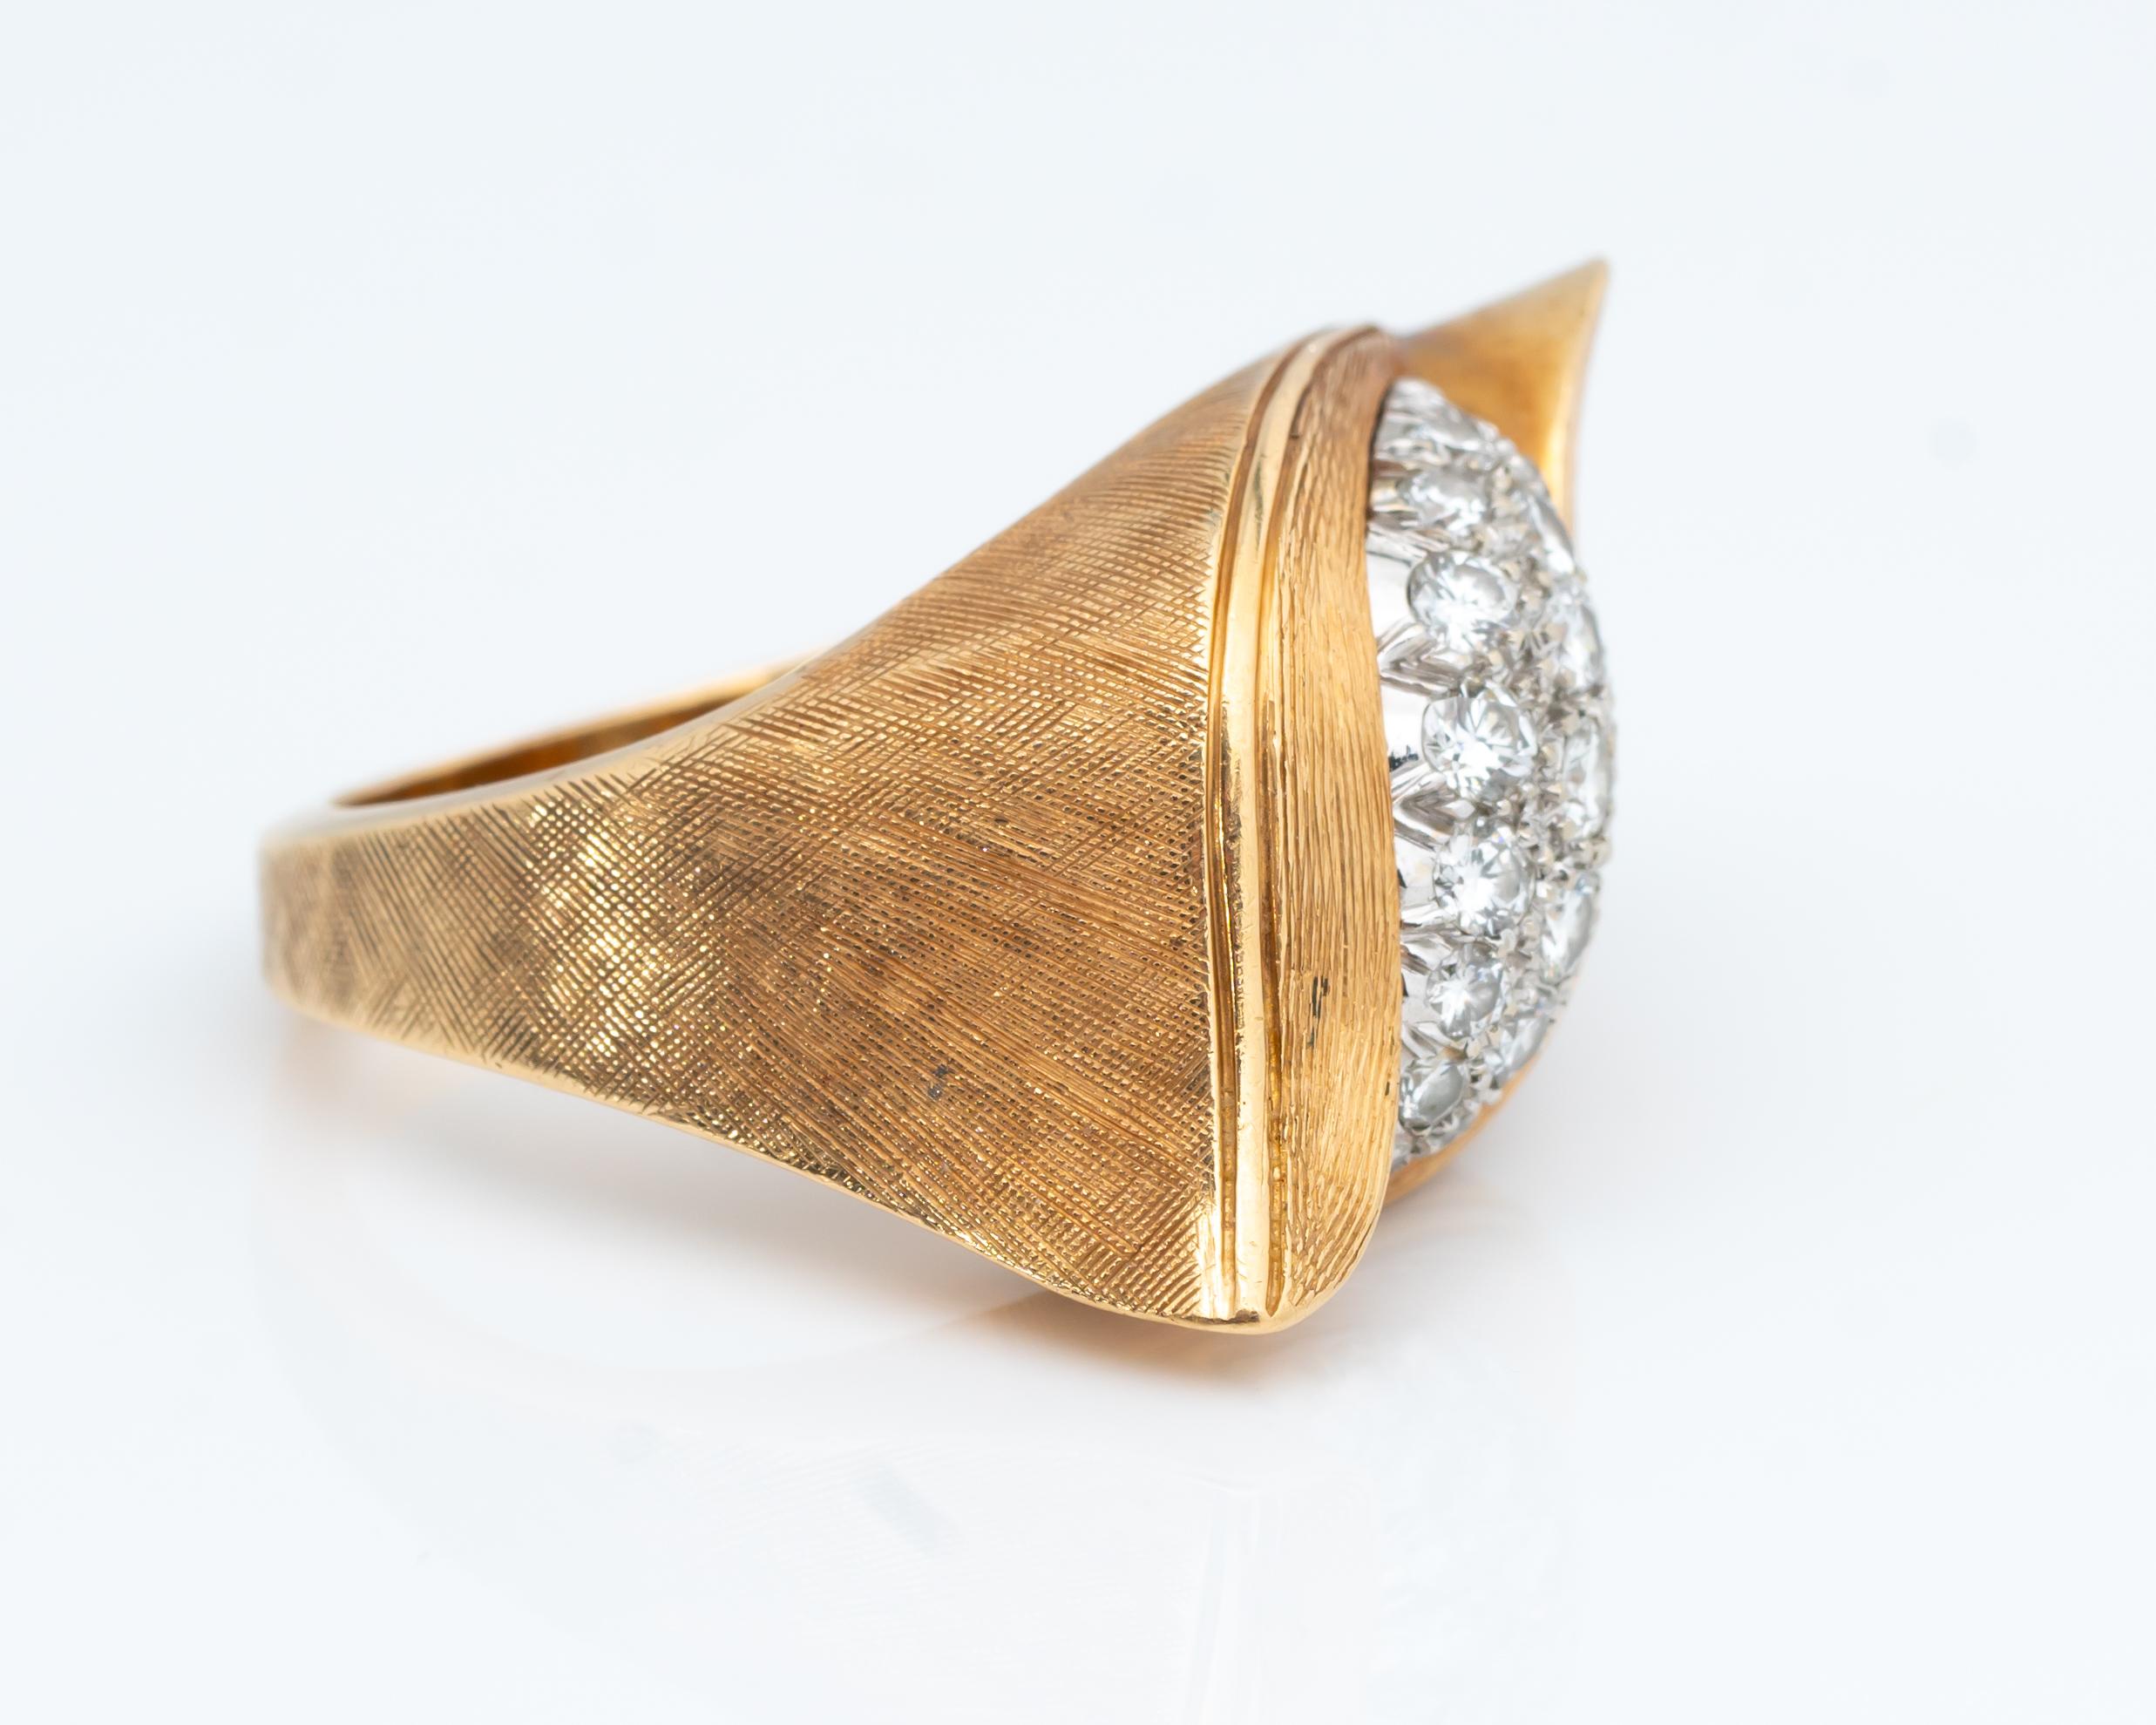 Wunderschön gearbeiteter Swoop-Ring mit Diamanten und 14 Karat Gelbgold. Das Gold hat eine einzigartige, minimal strukturierte Optik und Haptik, die dem Ring ein sehr schickes Finish verleiht! Die Draufsicht hat ein 